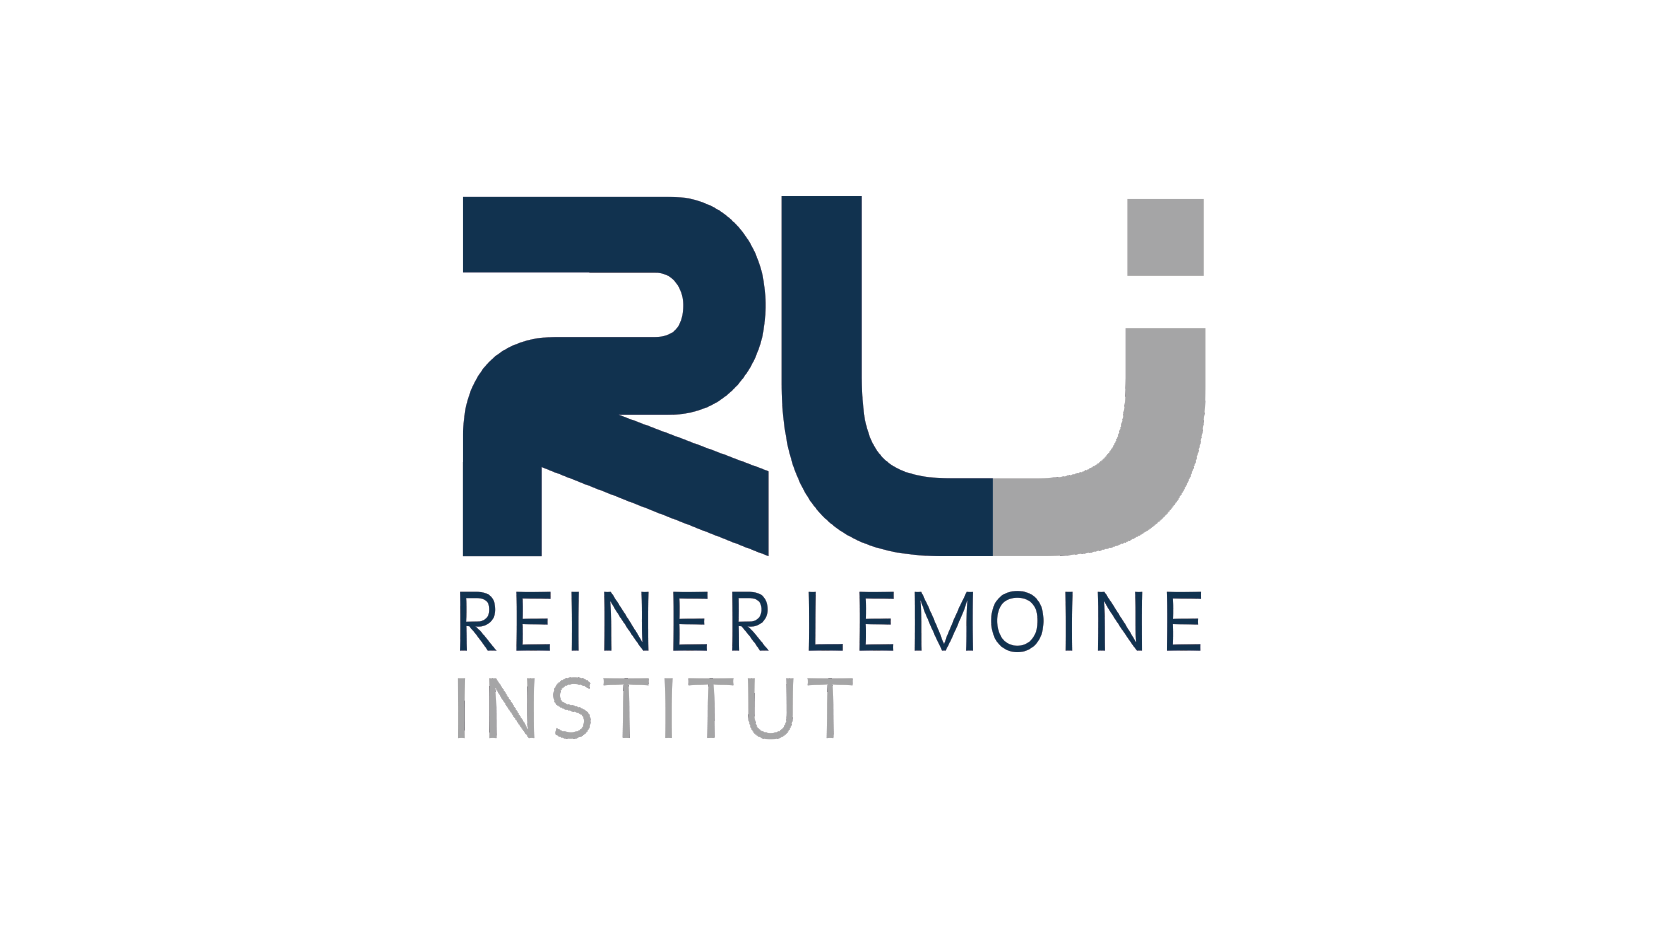 Reiner Lemoine Institute